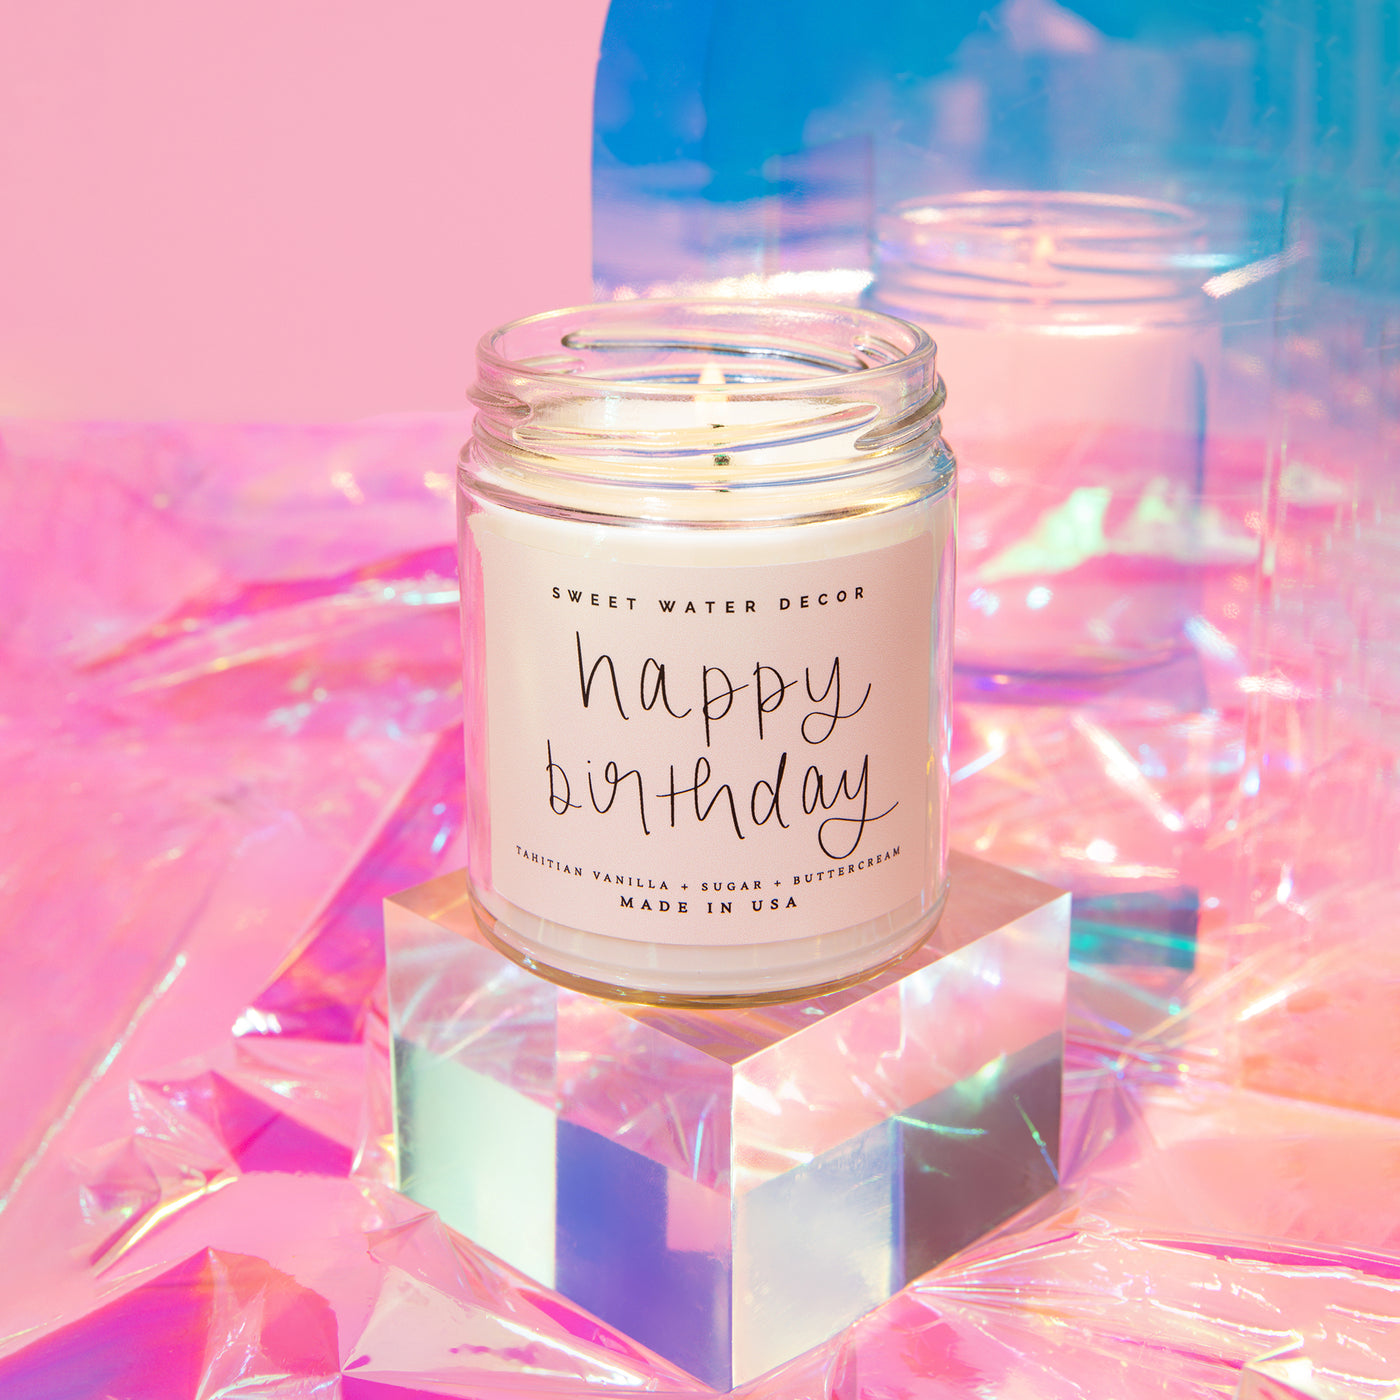 Happy Birthday Soy Candle - Clear Jar - 9 oz